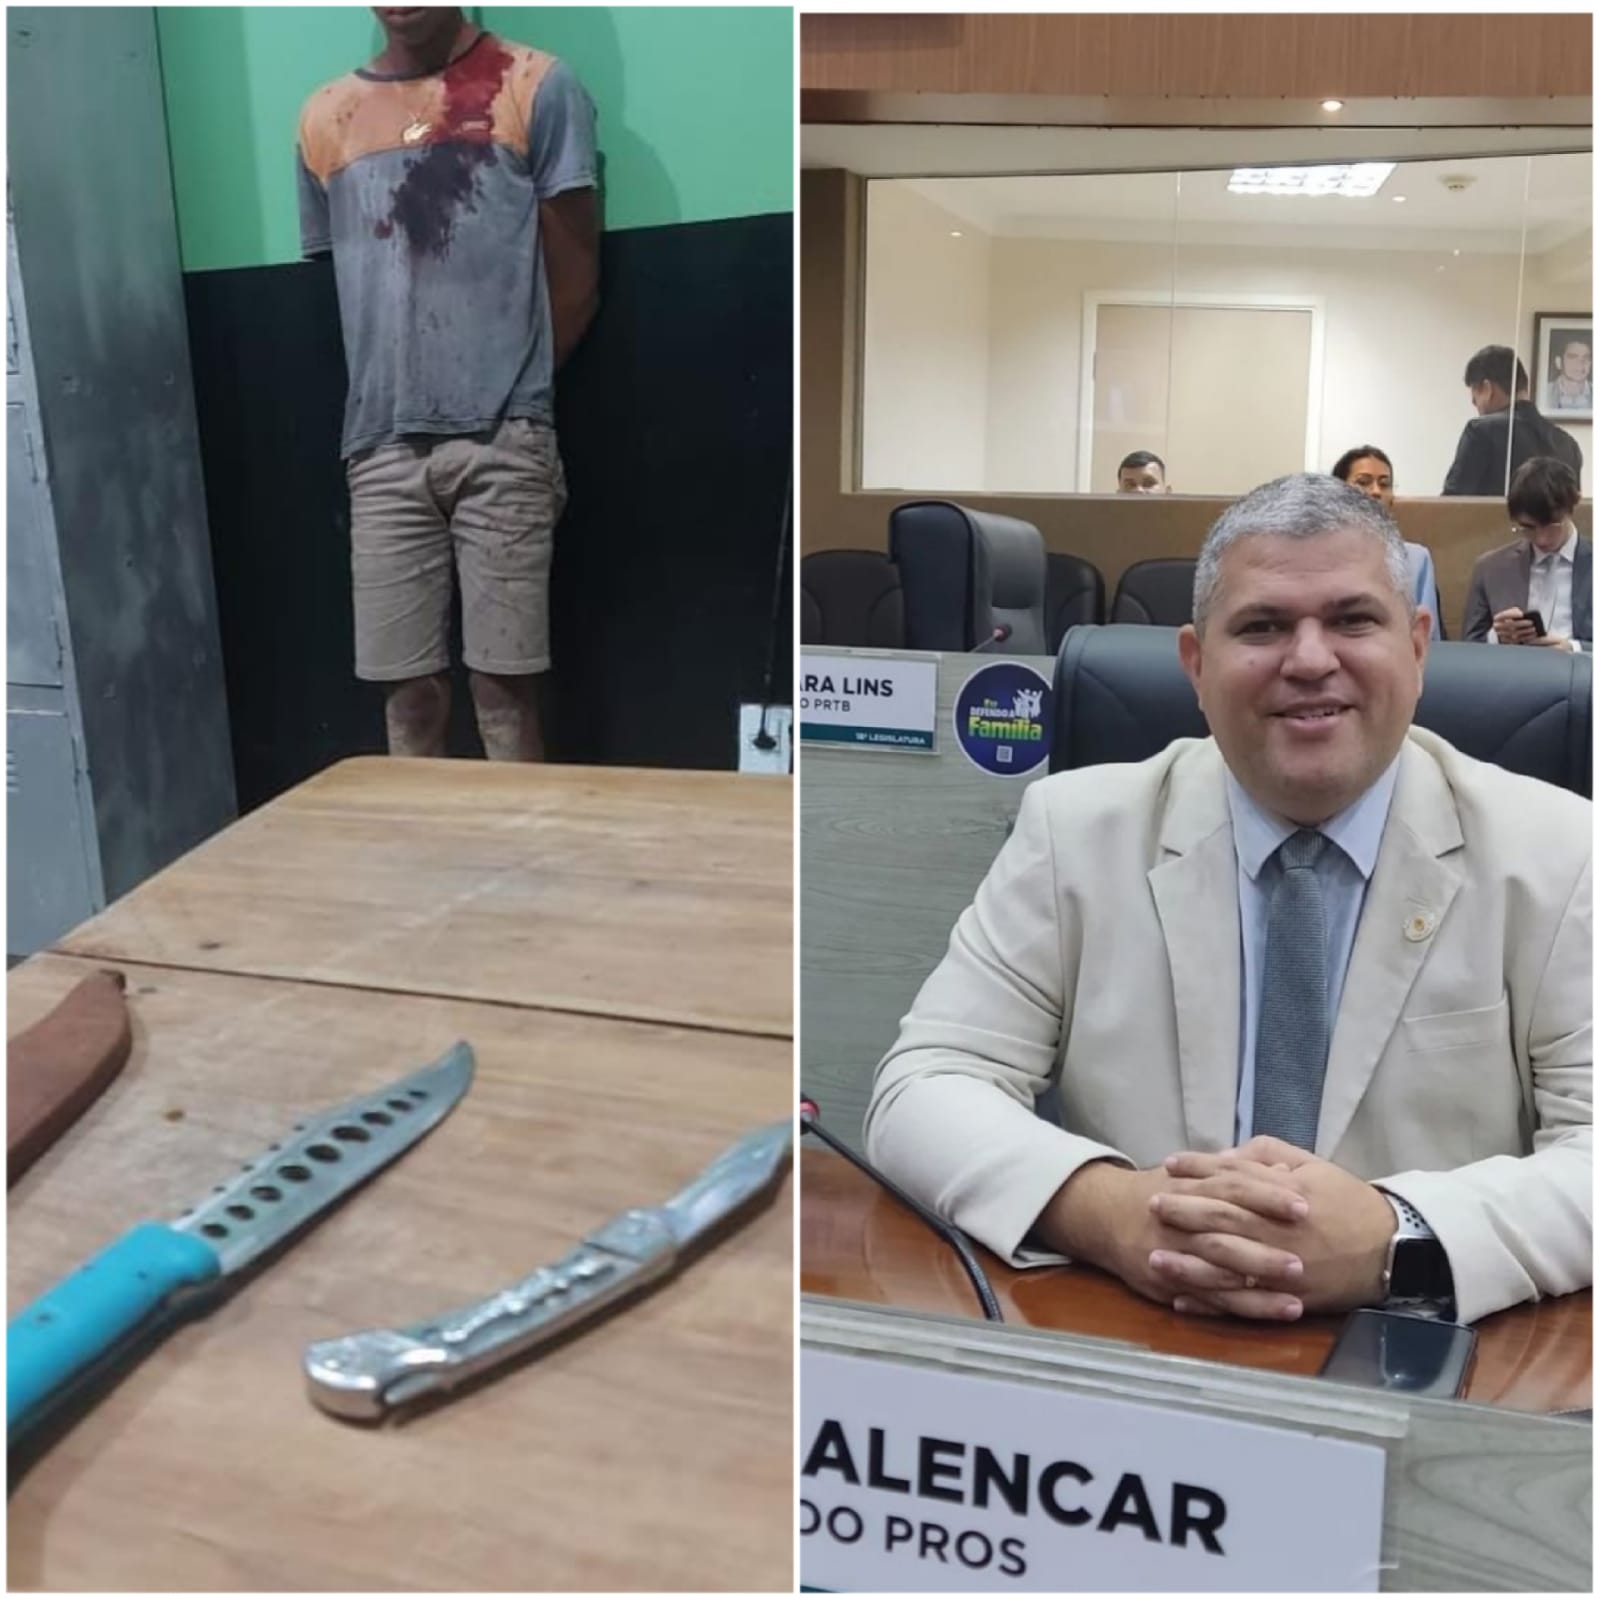 URGENTE: Vereador Elan Alencar sofre atentado em Eirunepé-AM